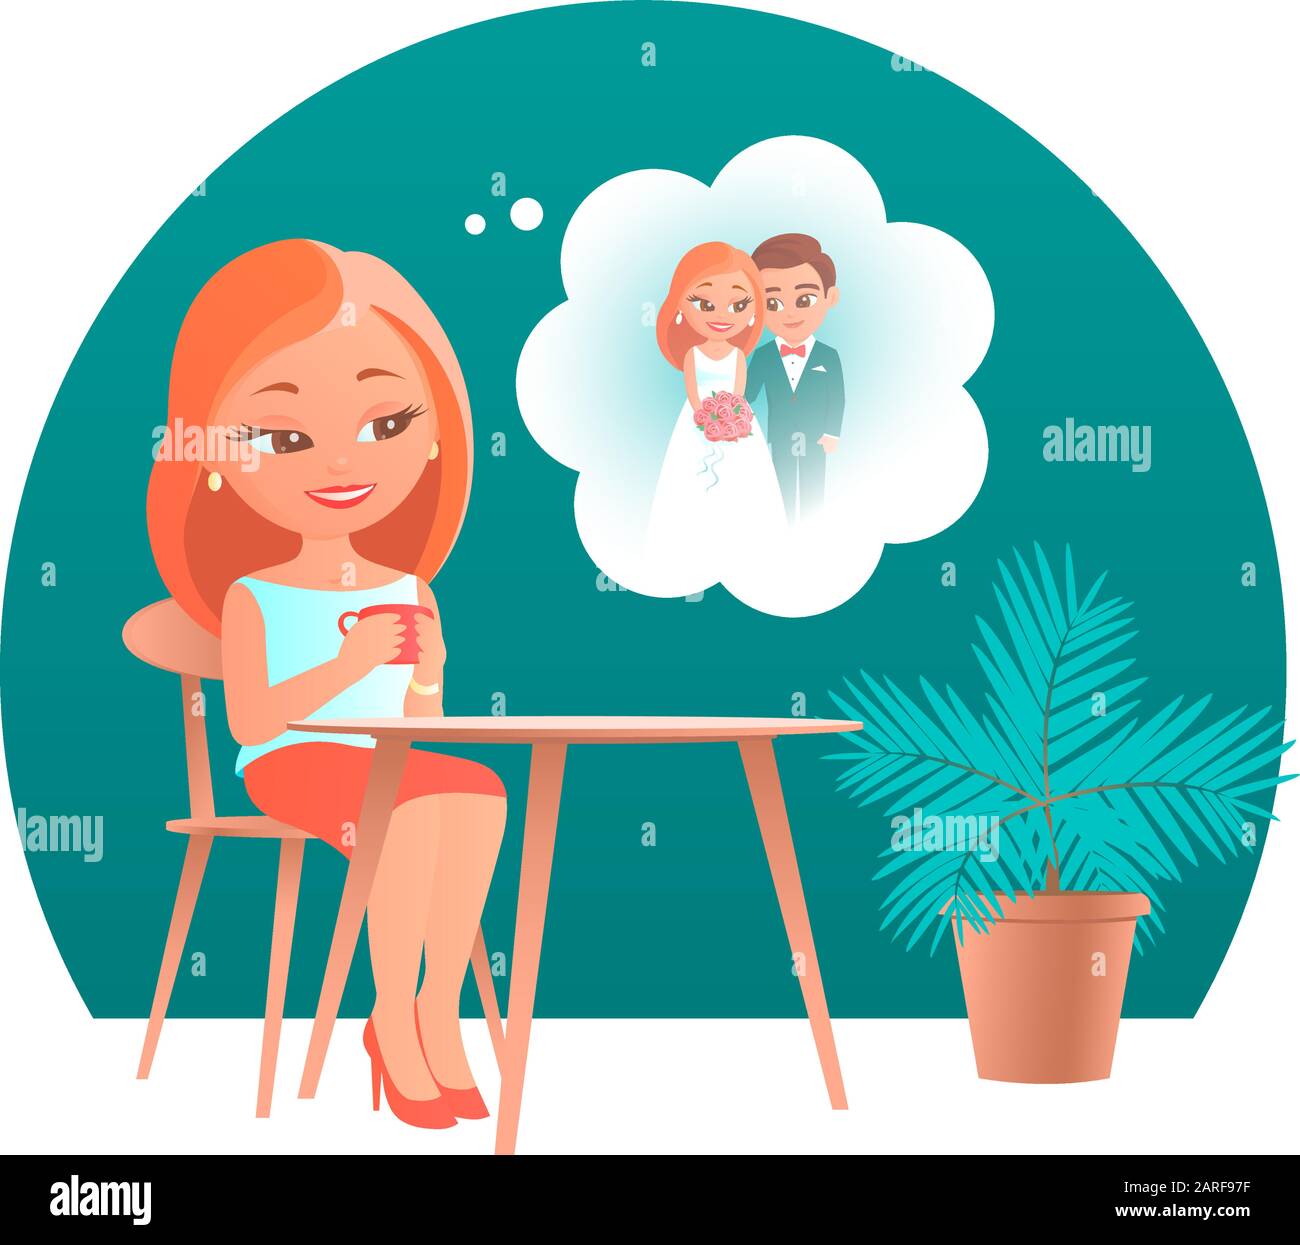 Süßes Cartoon-Mädchen, das an einem Tisch in einem Café sitzt. Er träumt von seiner zukünftigen Hochzeit mit seiner Geliebten. Vektor romantische Illustration. Stock Vektor